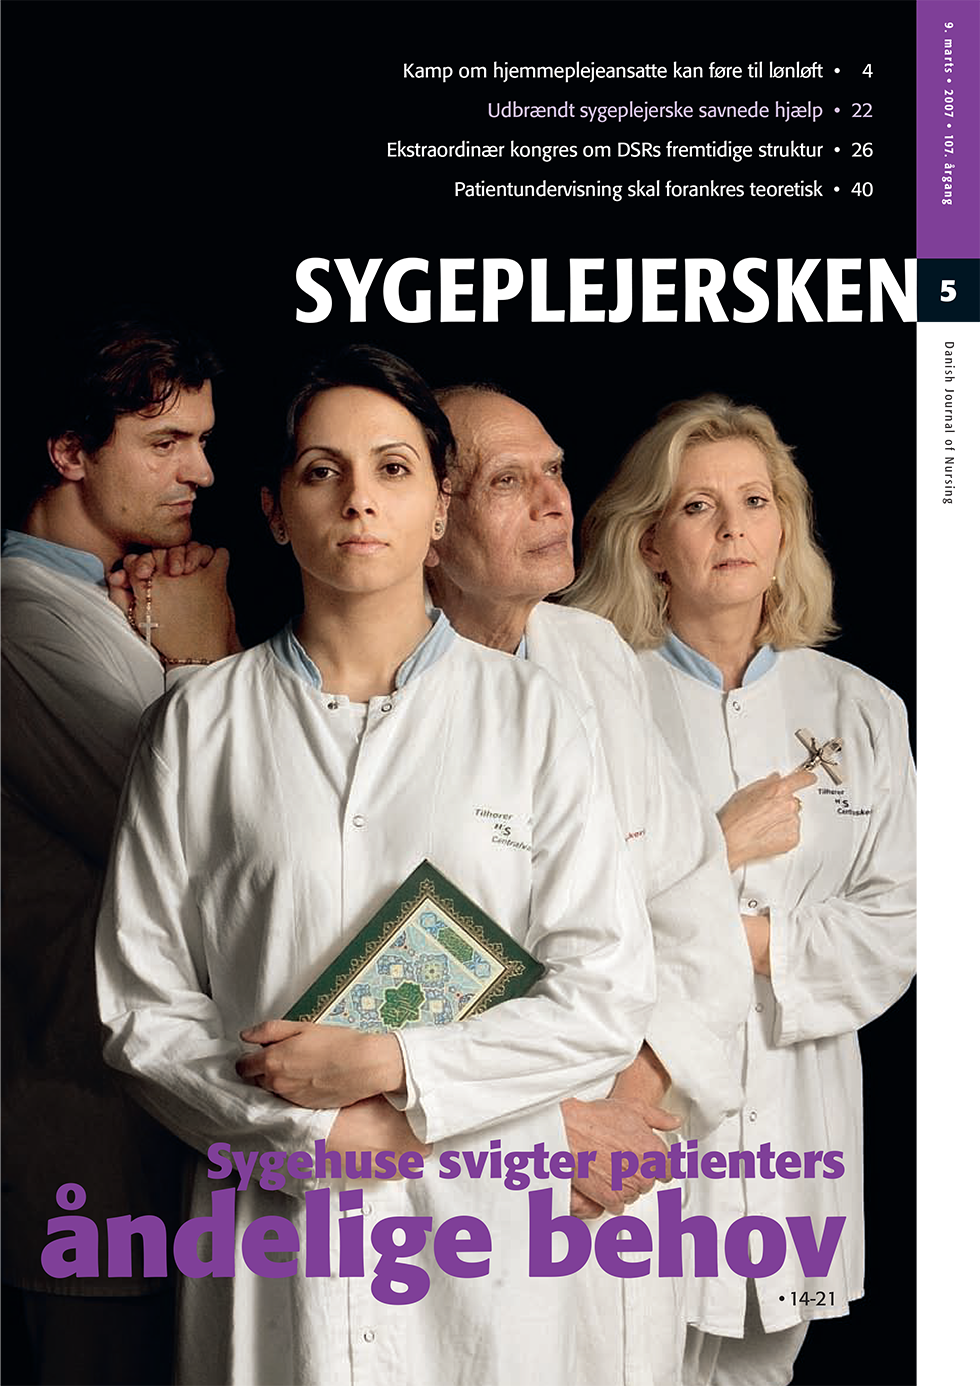 Sygeplejersken_2007_05 - magasinforsiden